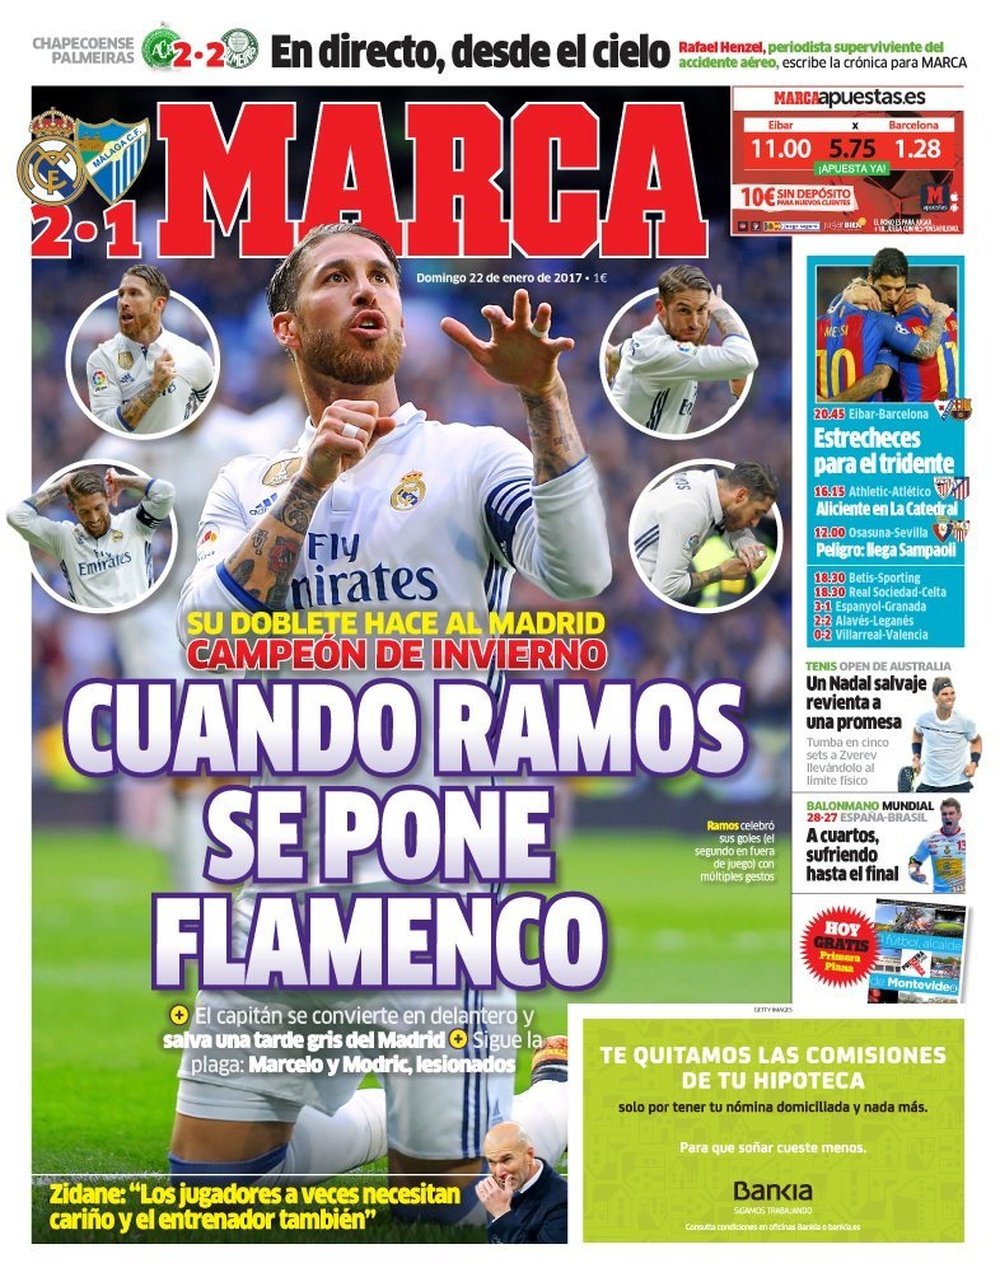 La Une du quotidien sportif espagnol 'Marca' du 22-01-17. MARCA